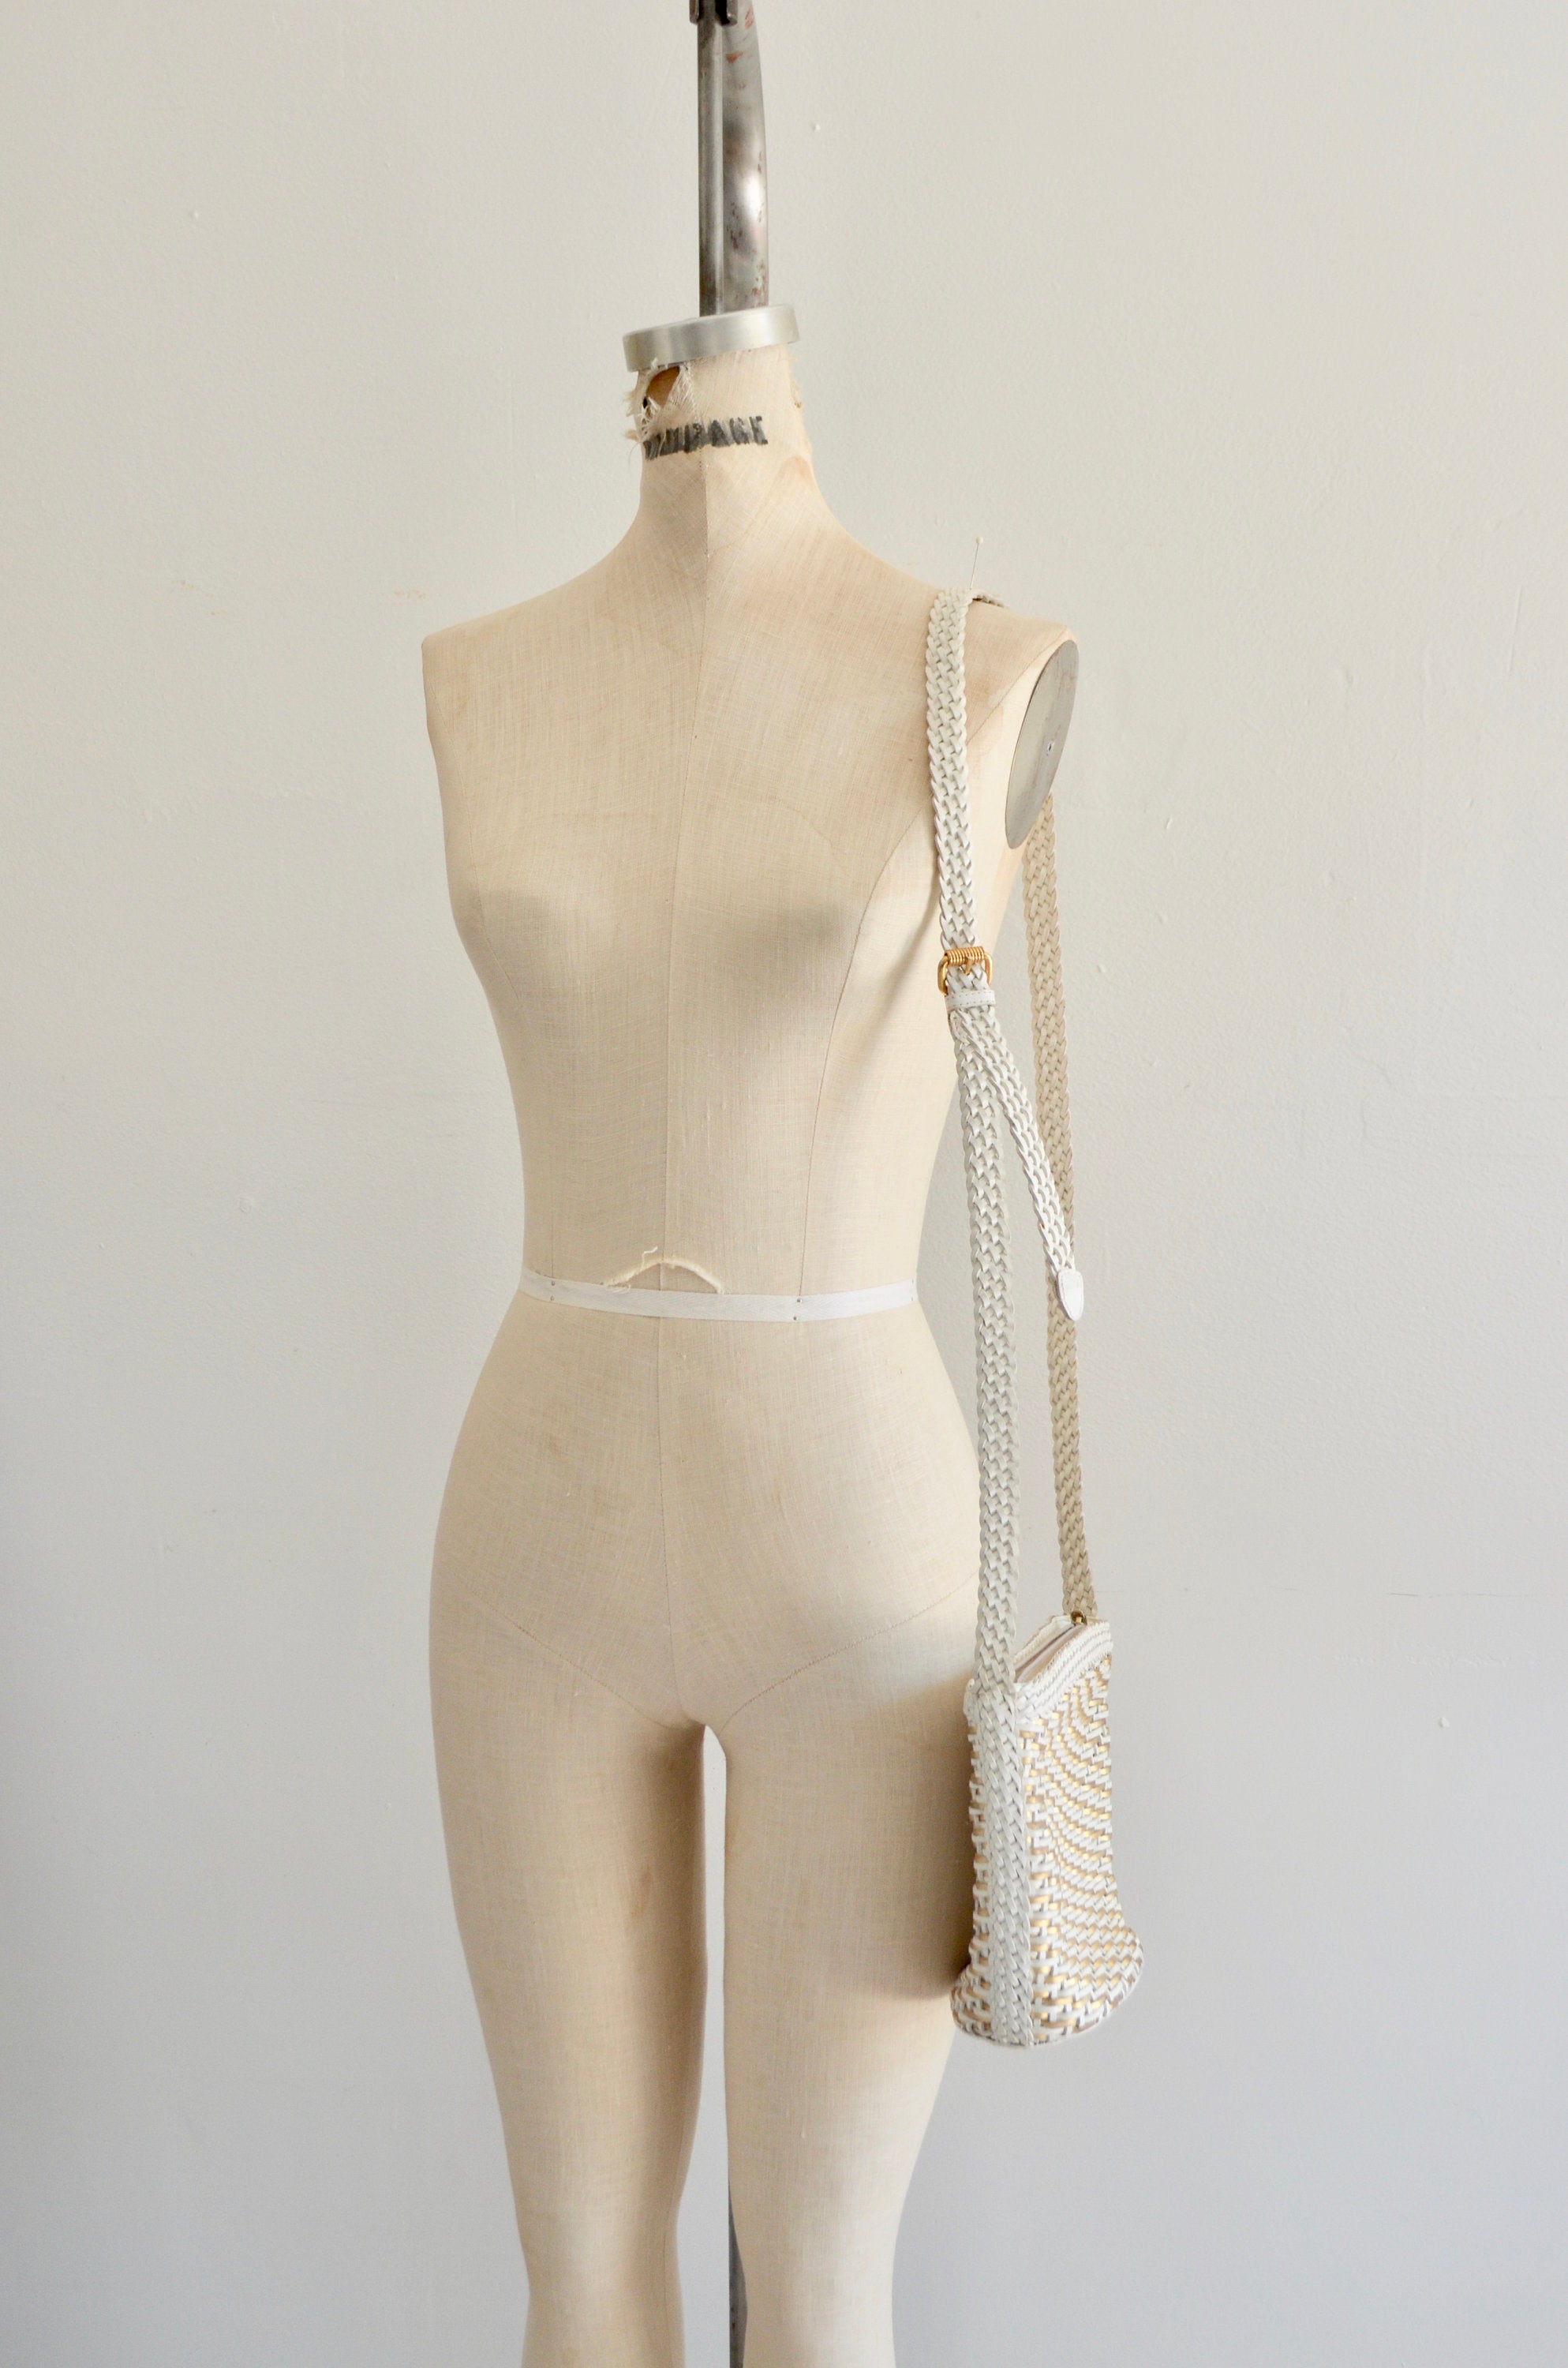 Gold/White Woven Braided Leather Cem Crossbody Handbags Brazilian Designer Bag Summer